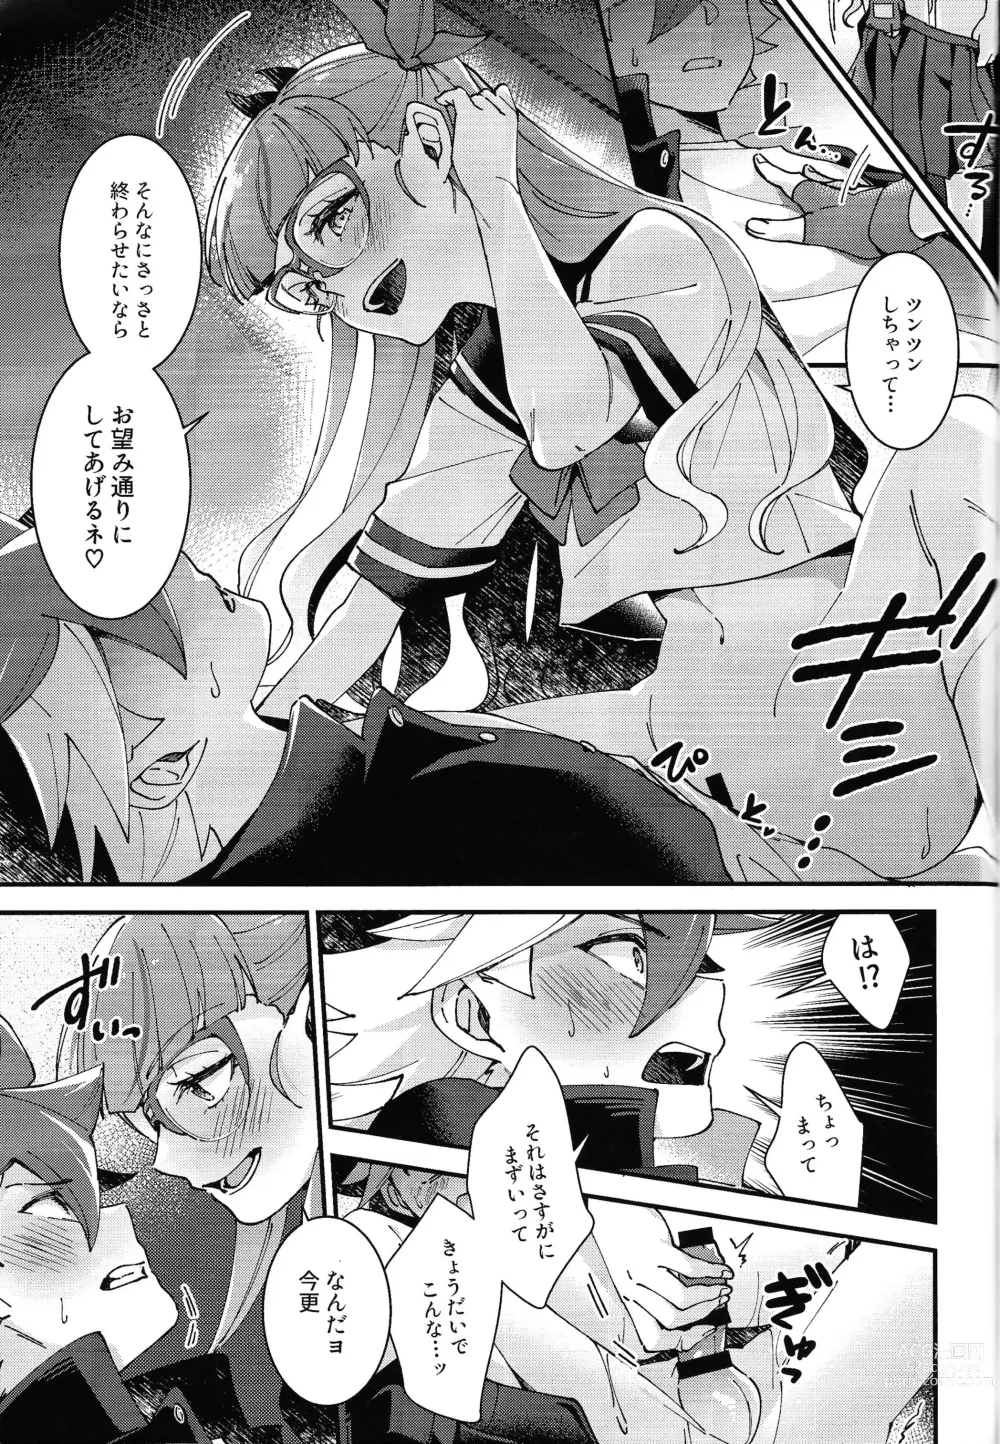 Page 15 of doujinshi Sonna Otoshigoro.